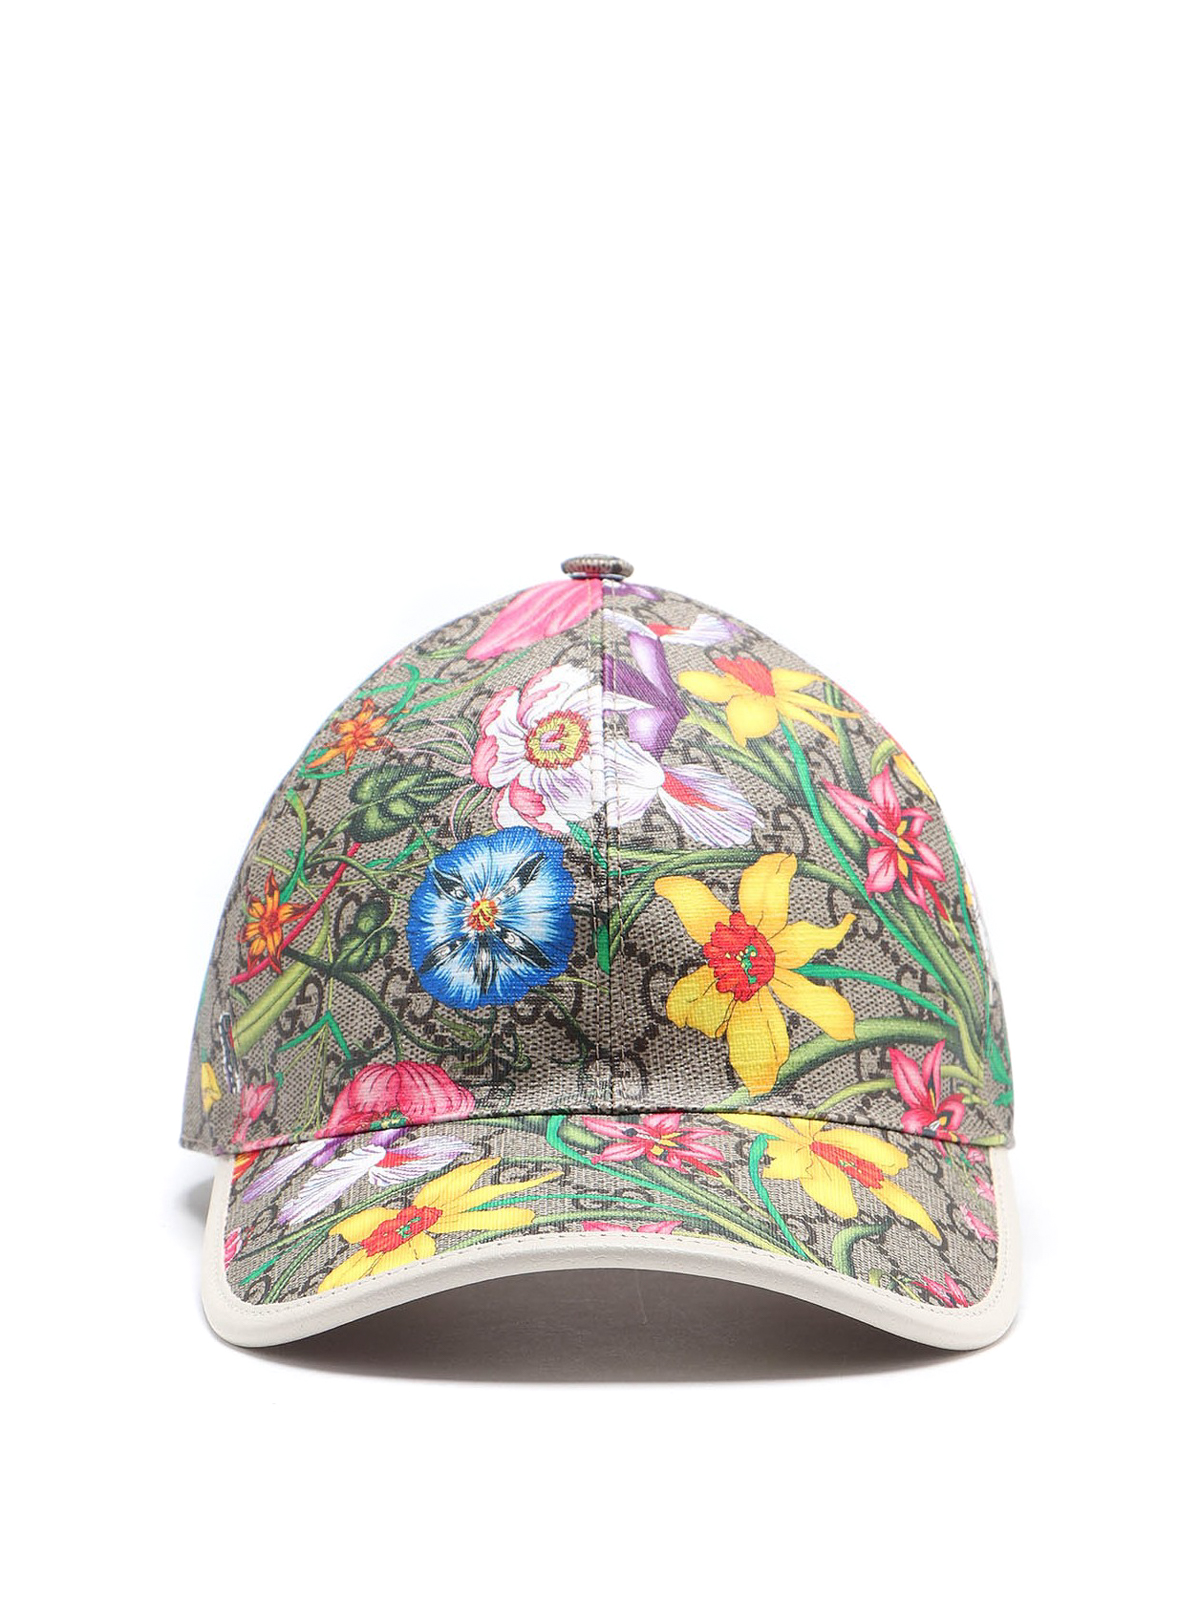 Hats & caps Gucci - GG Flora baseball cap - 6039864HI898477 